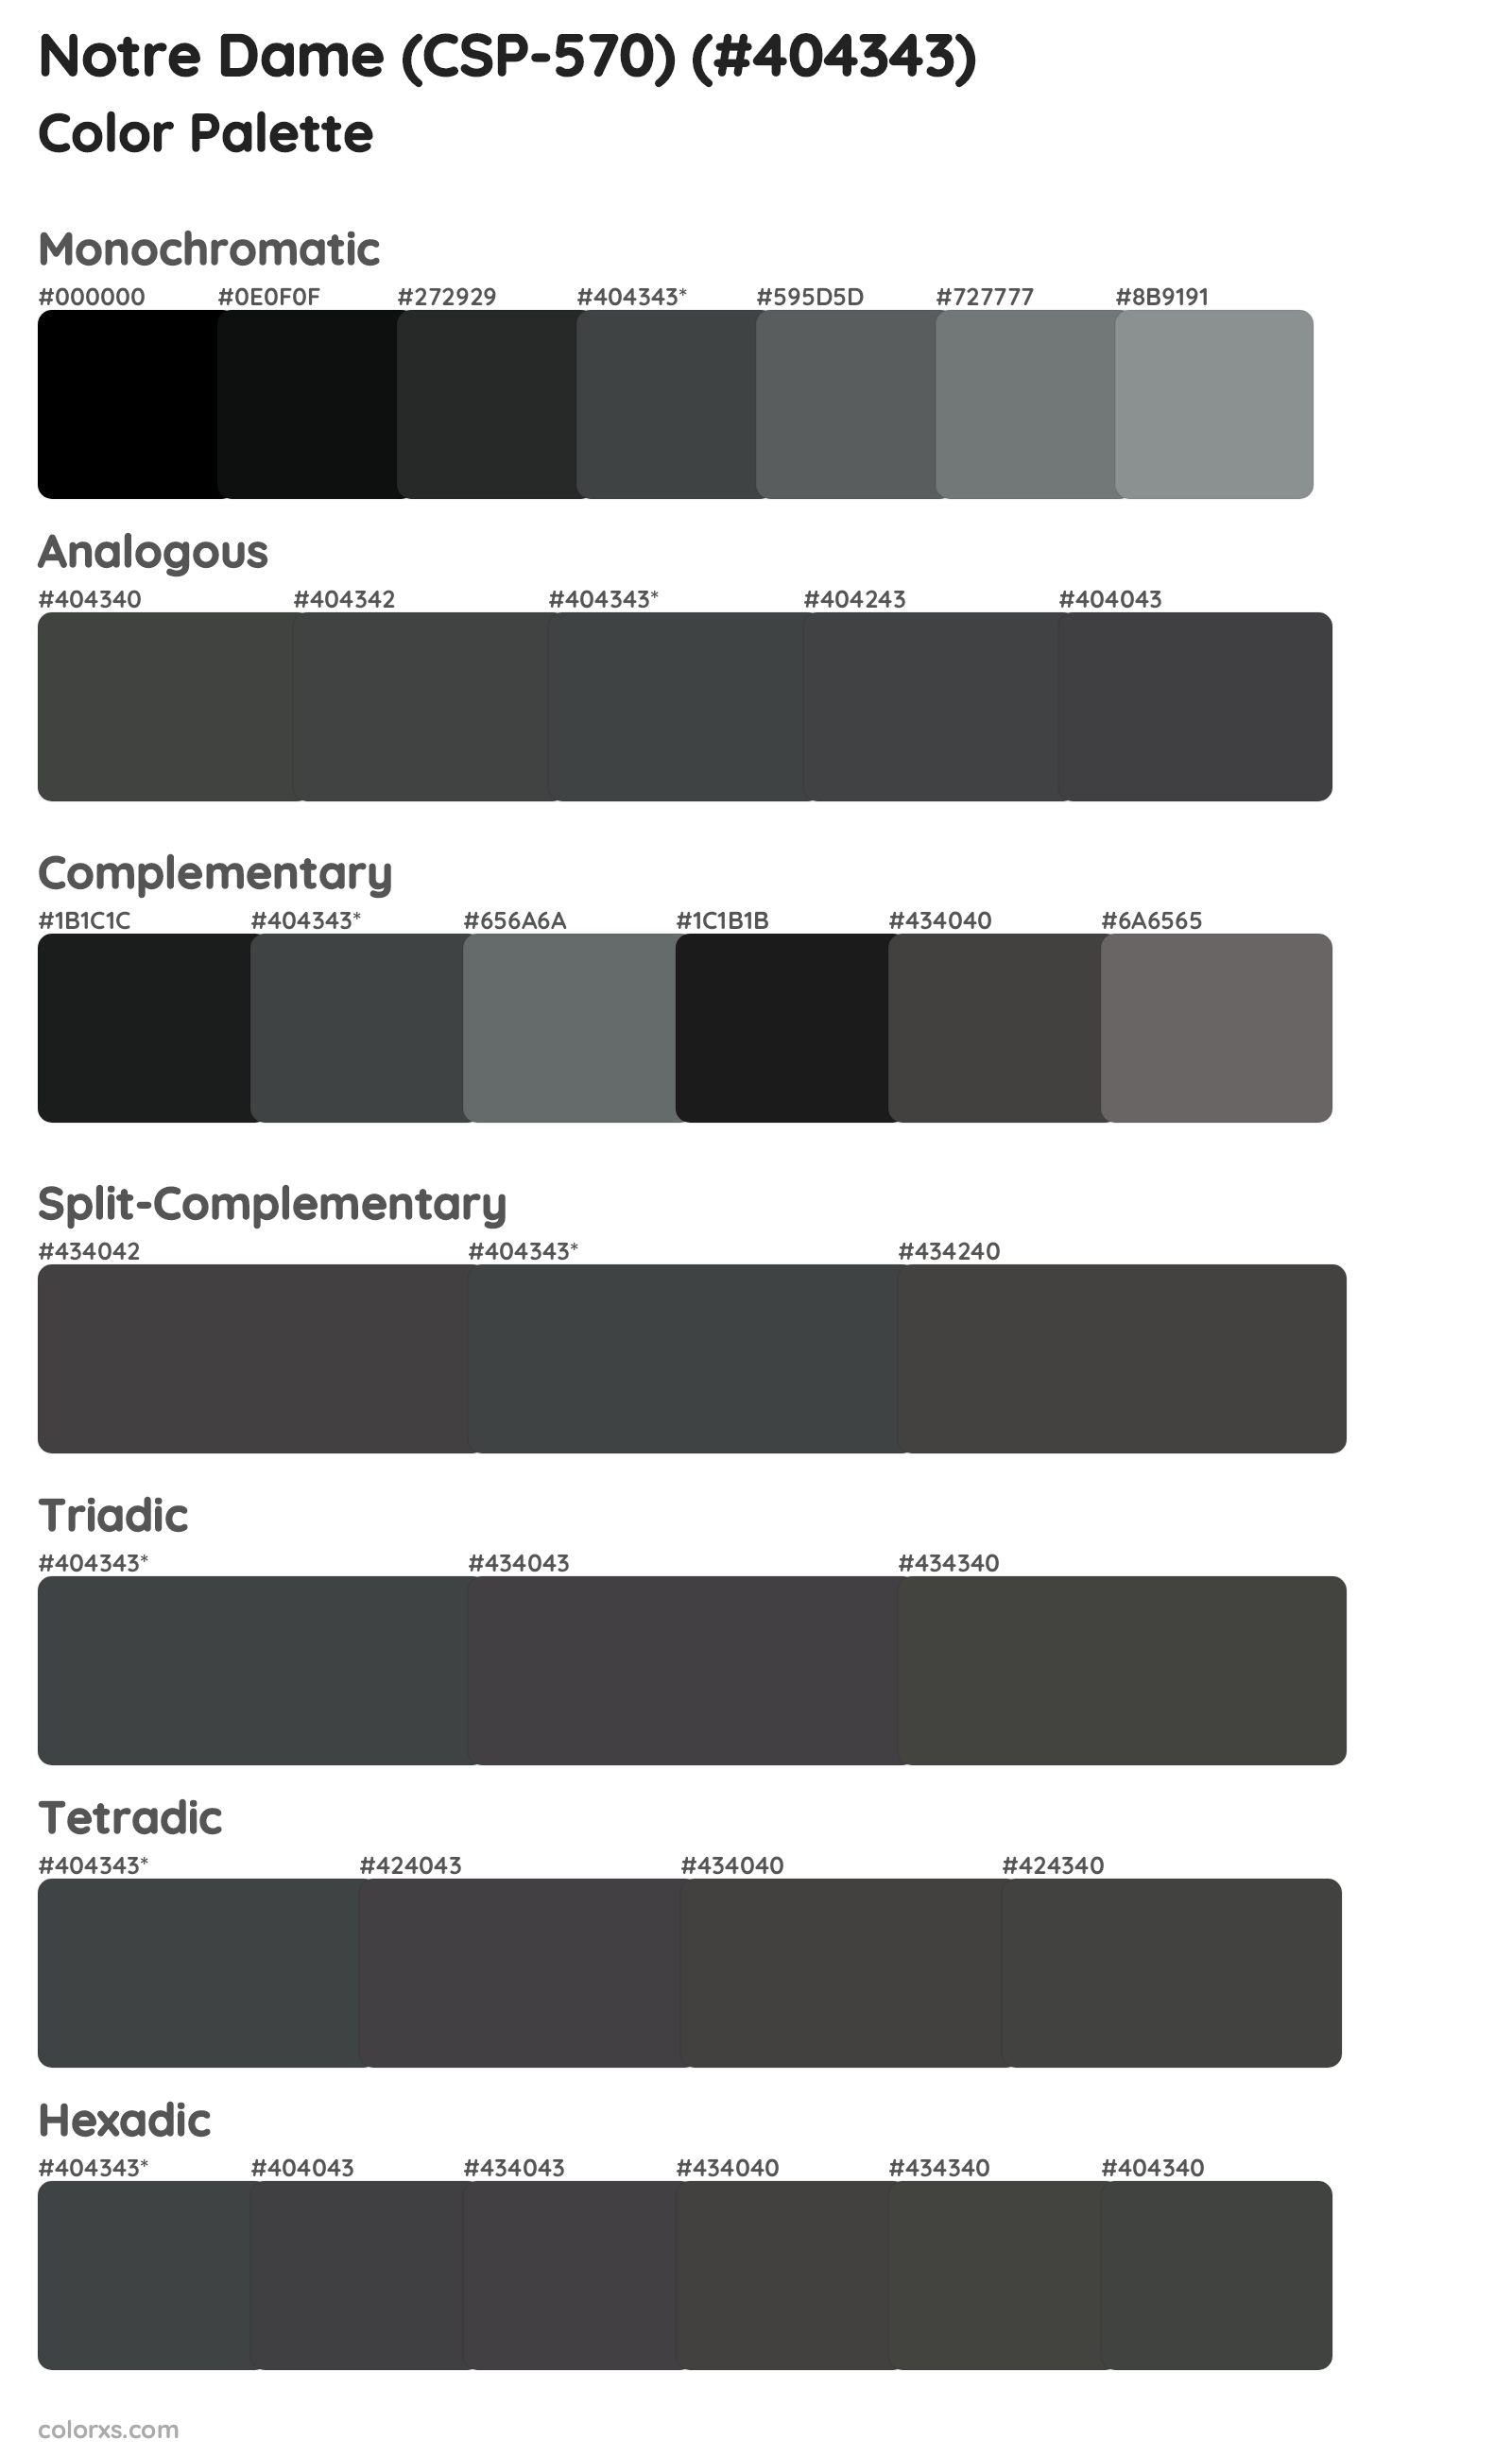 Notre Dame (CSP-570) Color Scheme Palettes